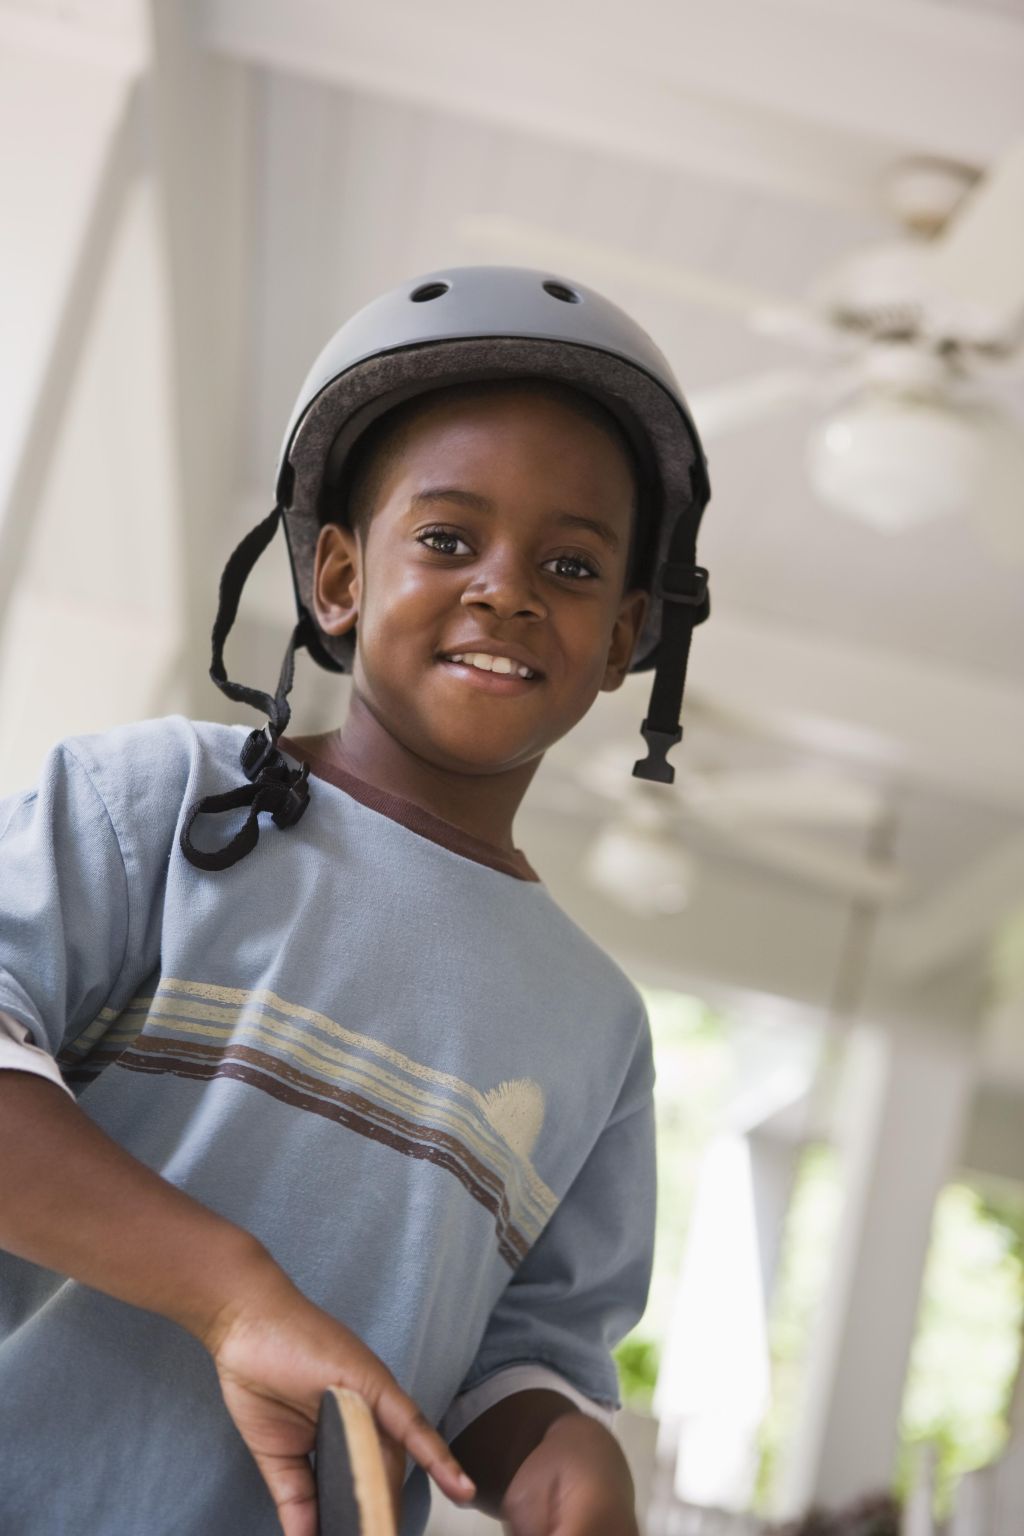 Smiling boy wearing a helmet